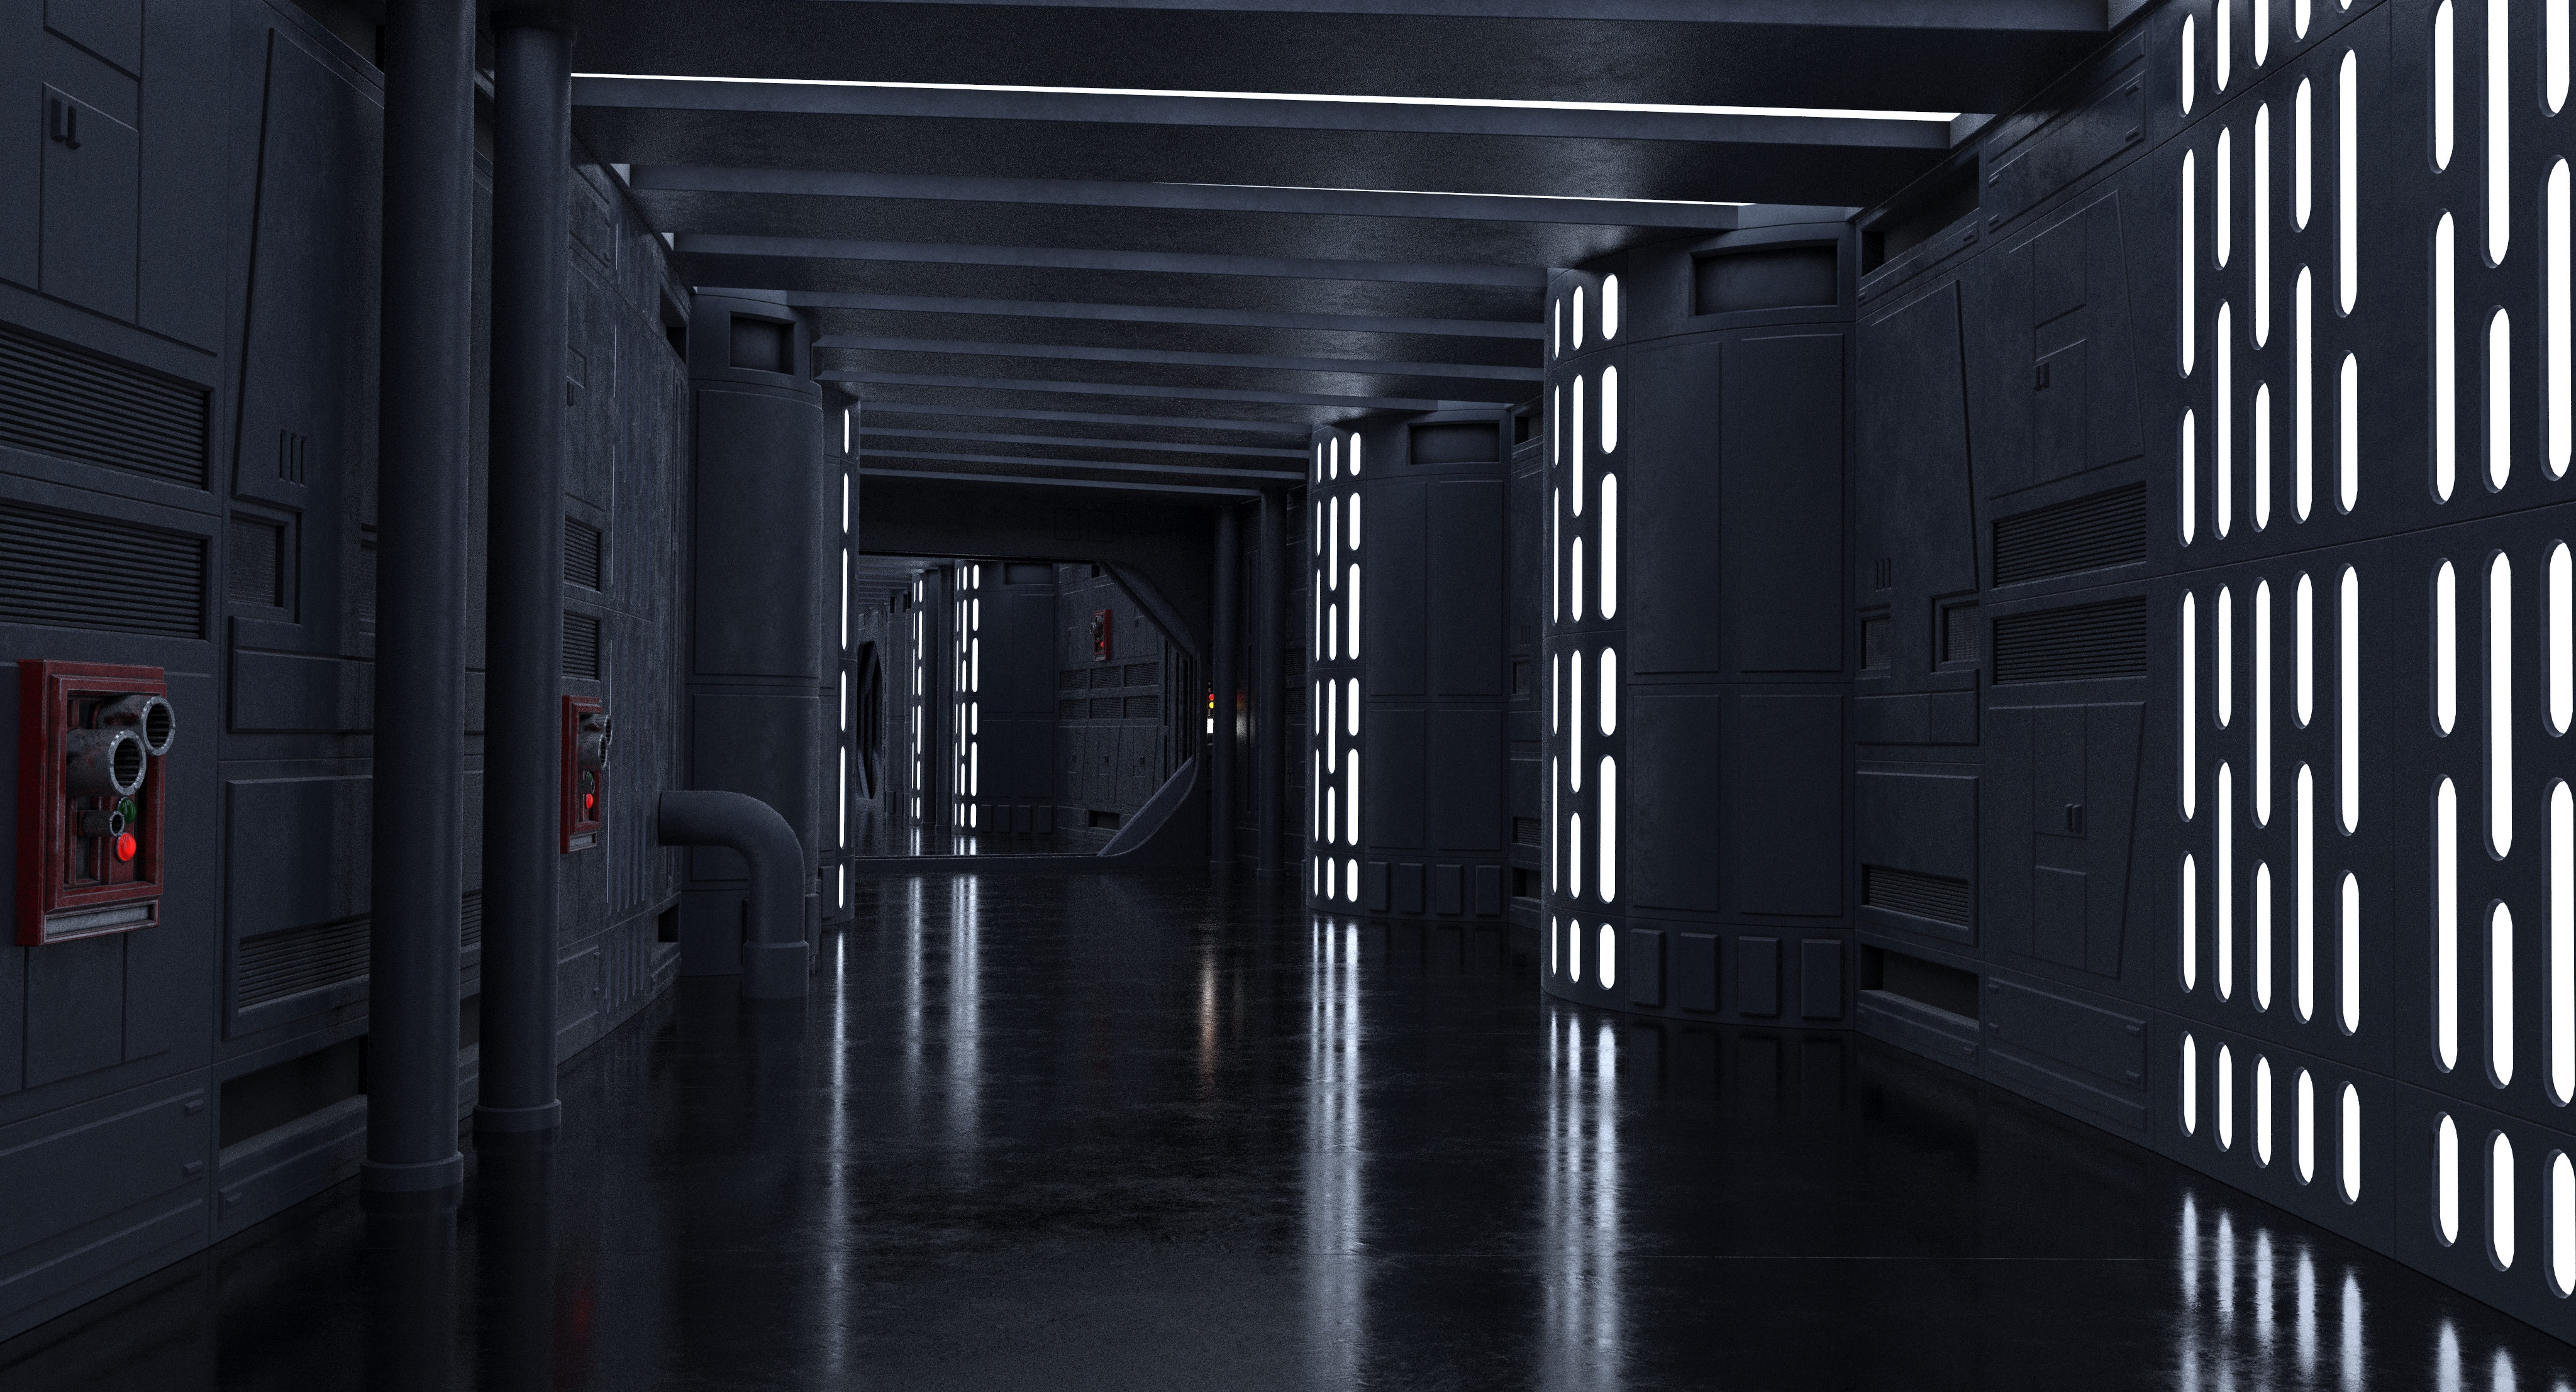 Imperial Corridor